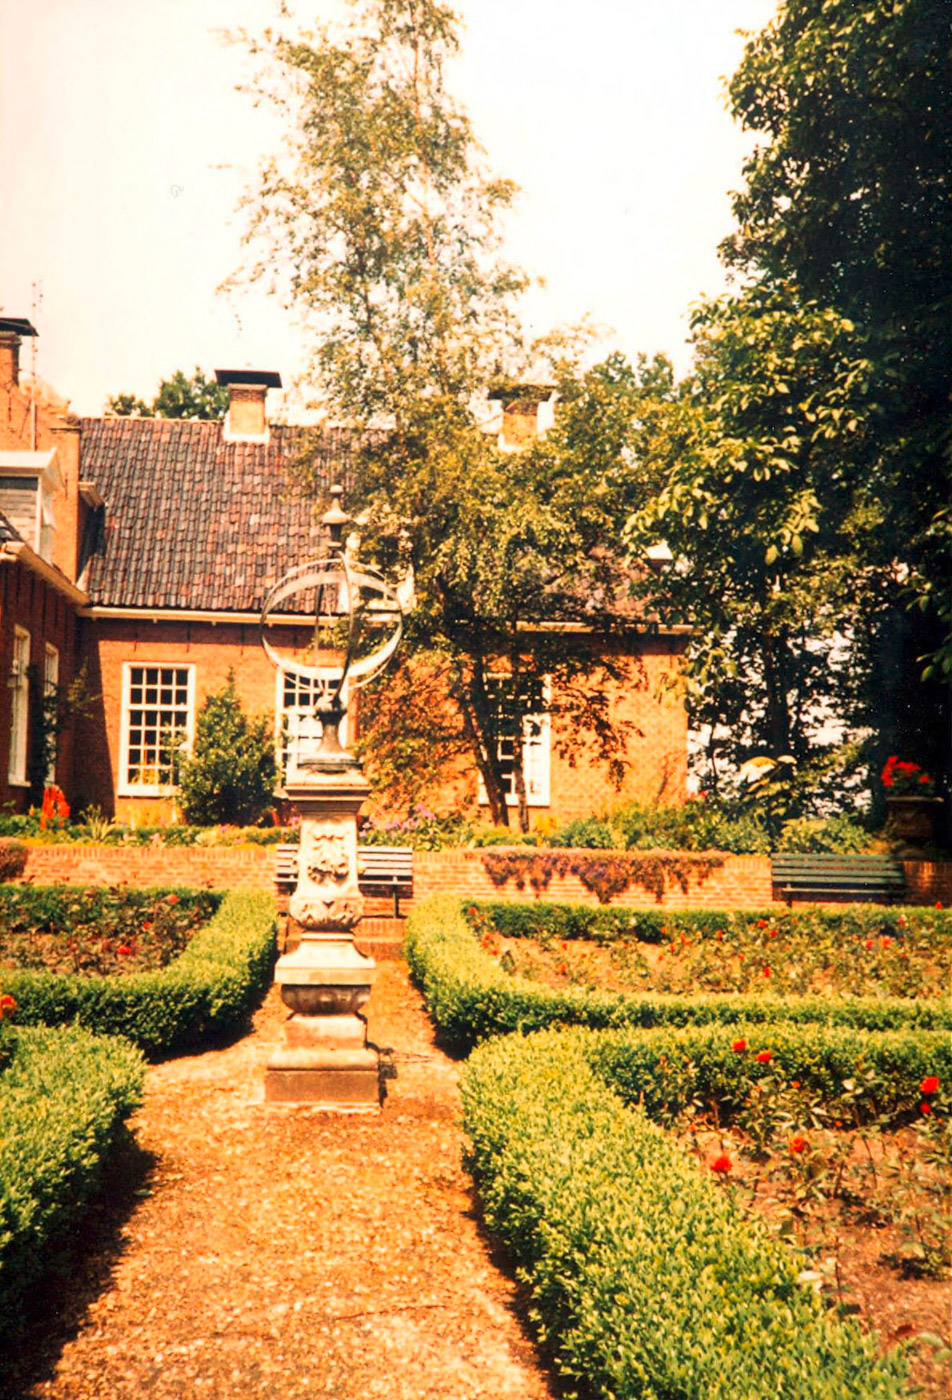 De borg gezien vanuit de tuin met de bekende 'kortgeschoren' symmetrische hagen.